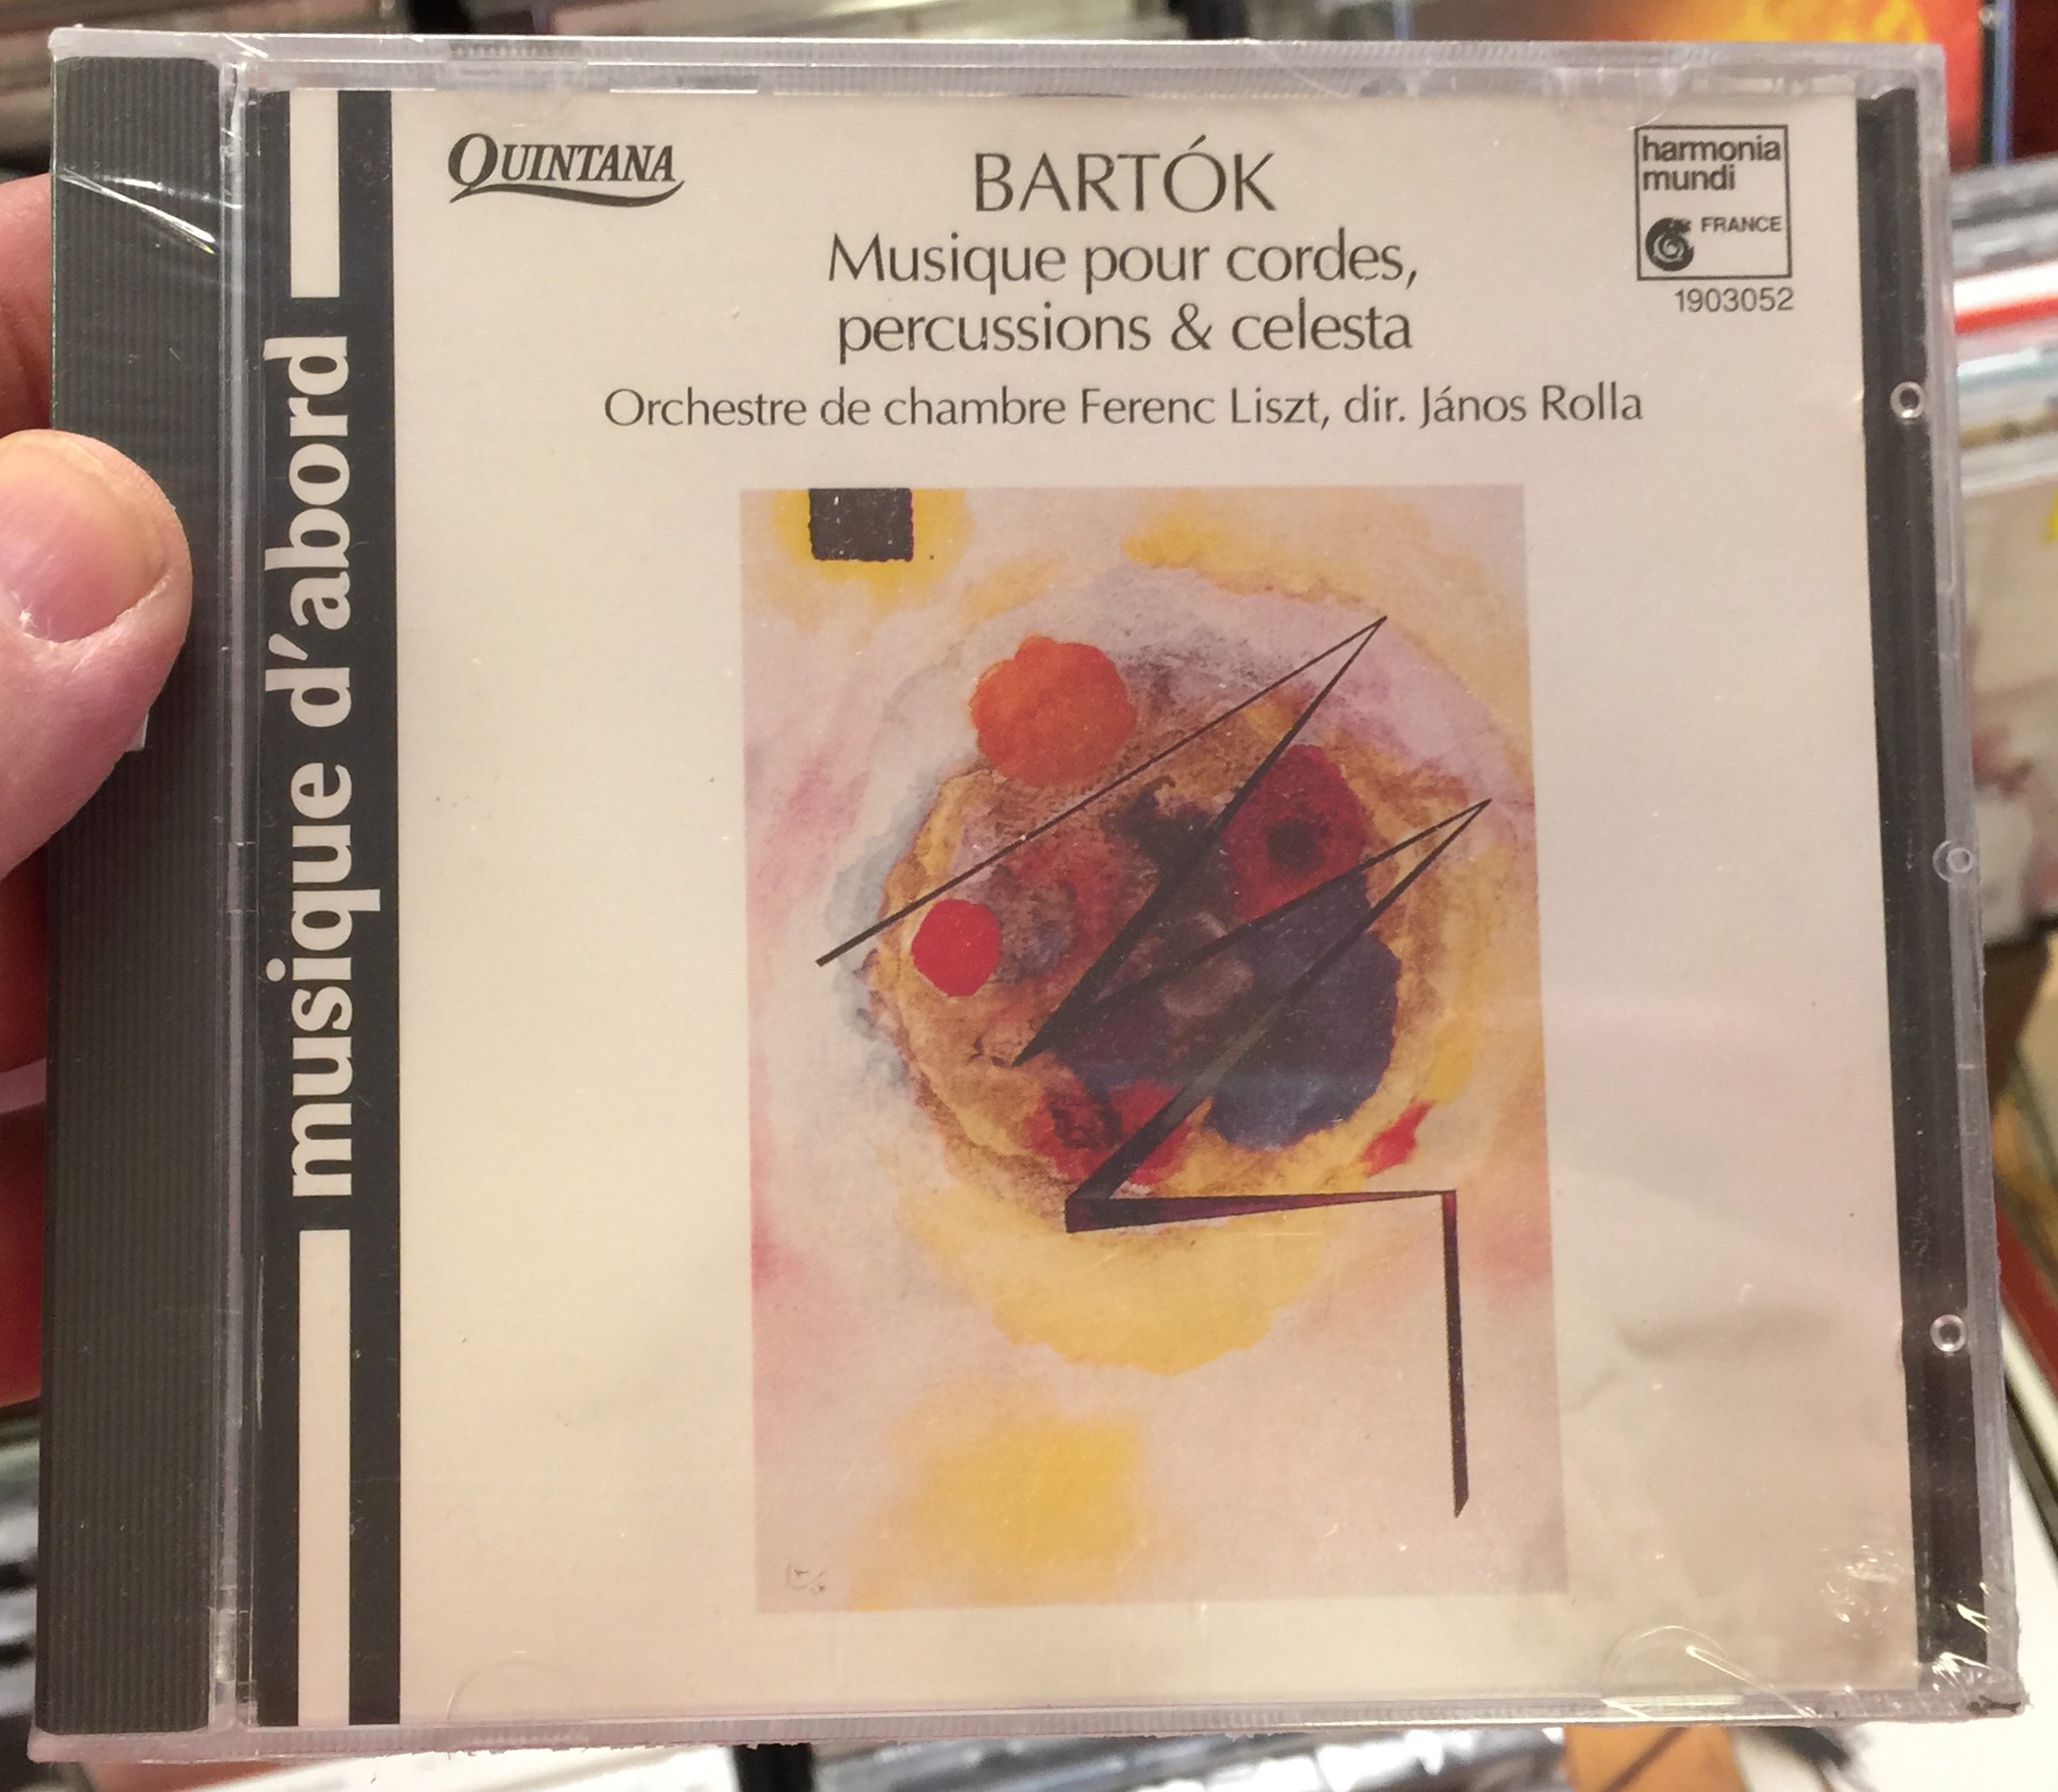 bart-k-musique-pour-cordes-percussions-c-lesta-orchestre-de-chambre-ferenc-liszt-j-nos-rolla-harmonia-mundi-audio-cd-1995-hma-1903052-1-.jpg